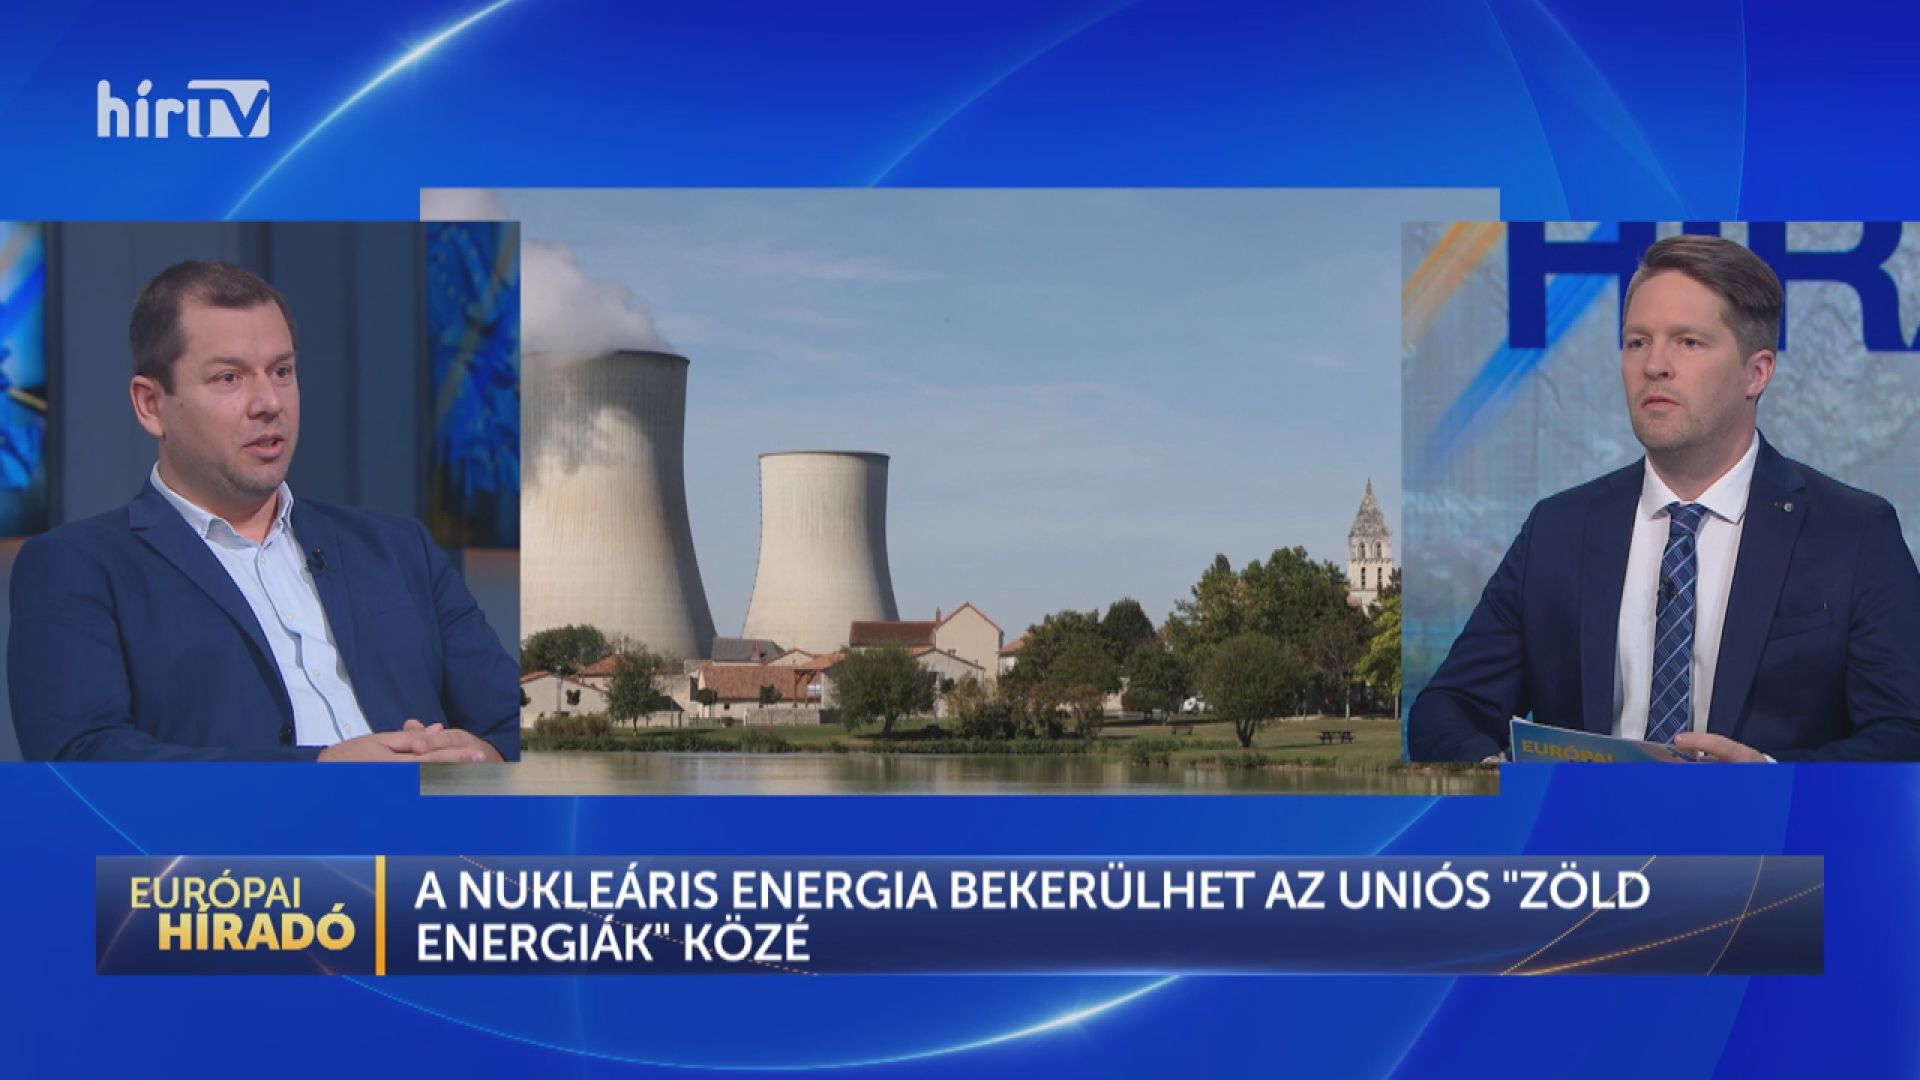 Európai híradó: Magyarország megépíti Paks 2-t, Franciaország pedig hat kisebb atomerőművel tervez